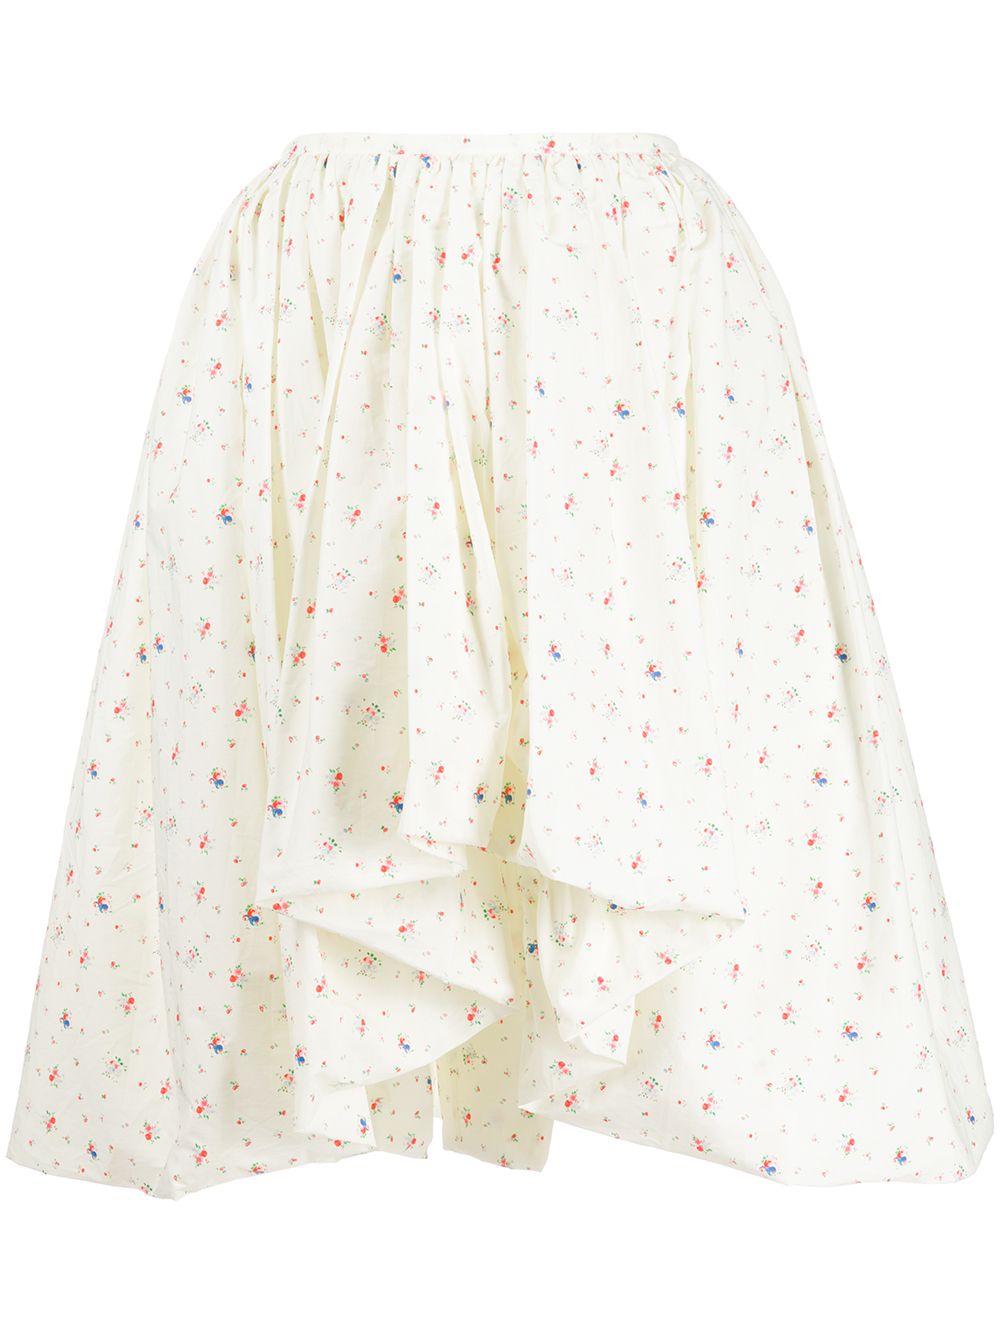 фото Molly goddard расклешенная юбка с цветочным принтом